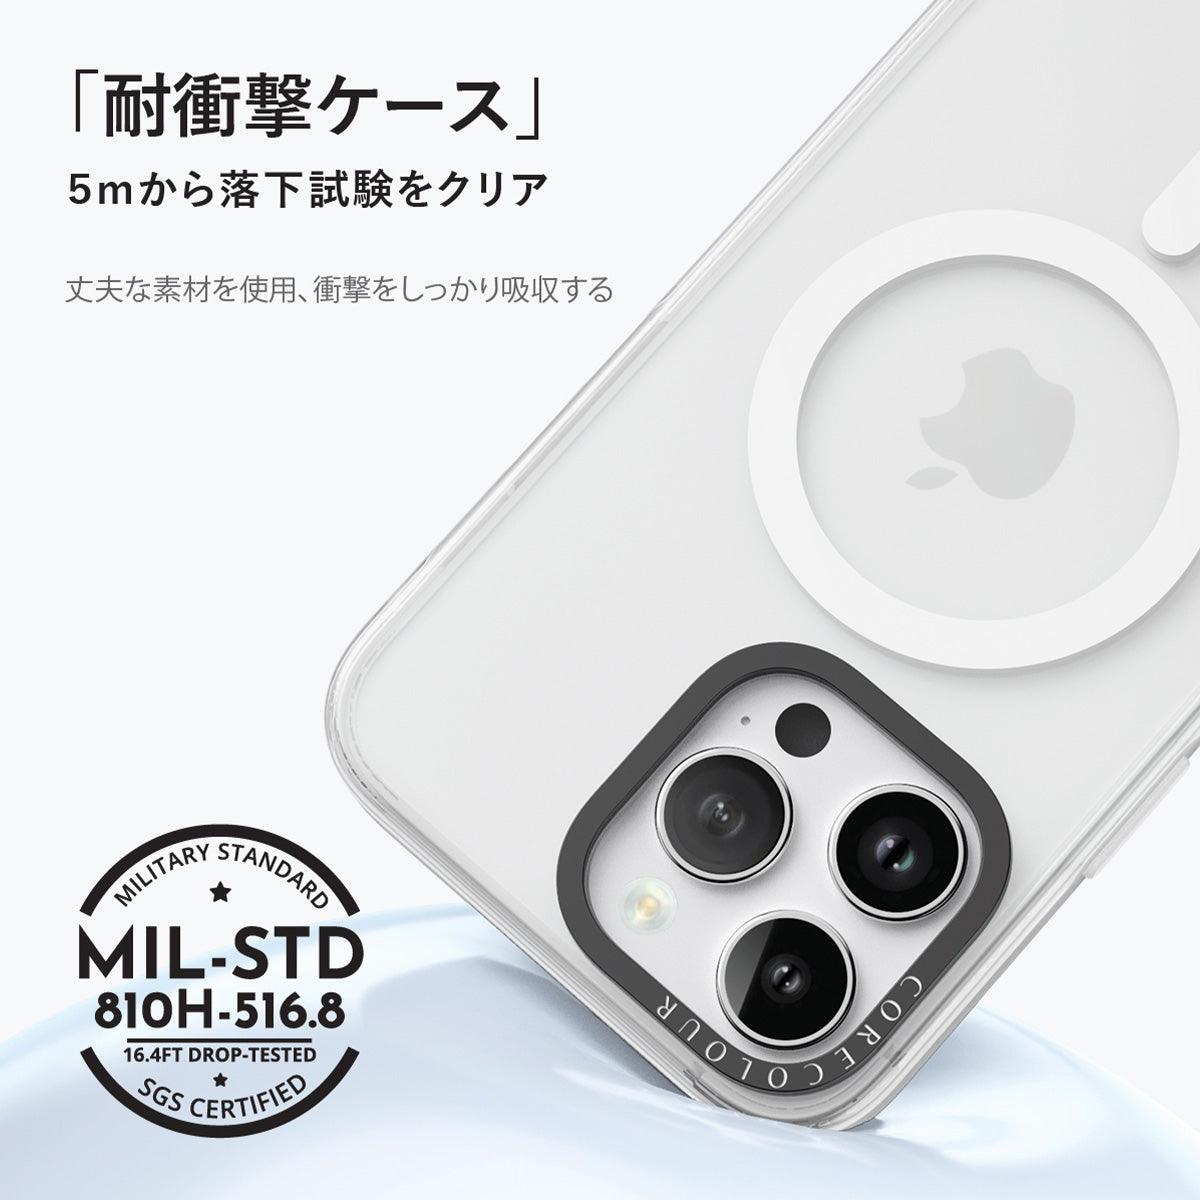 iPhone 13 Pro Max みかん スマホケース - CORECOLOUR